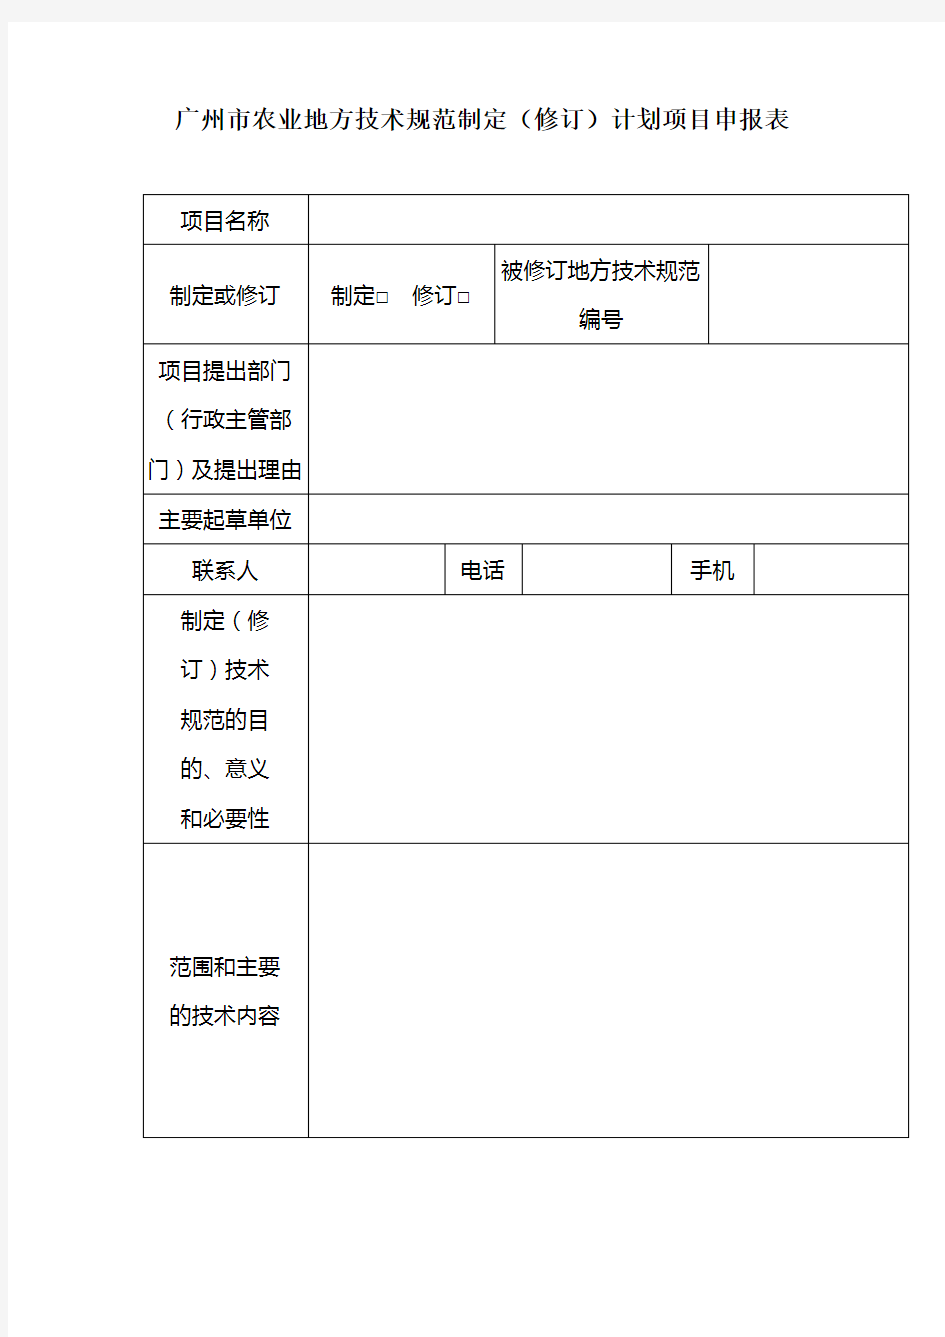 广州市农业地方技术规范制定(修订)计划项目申报表